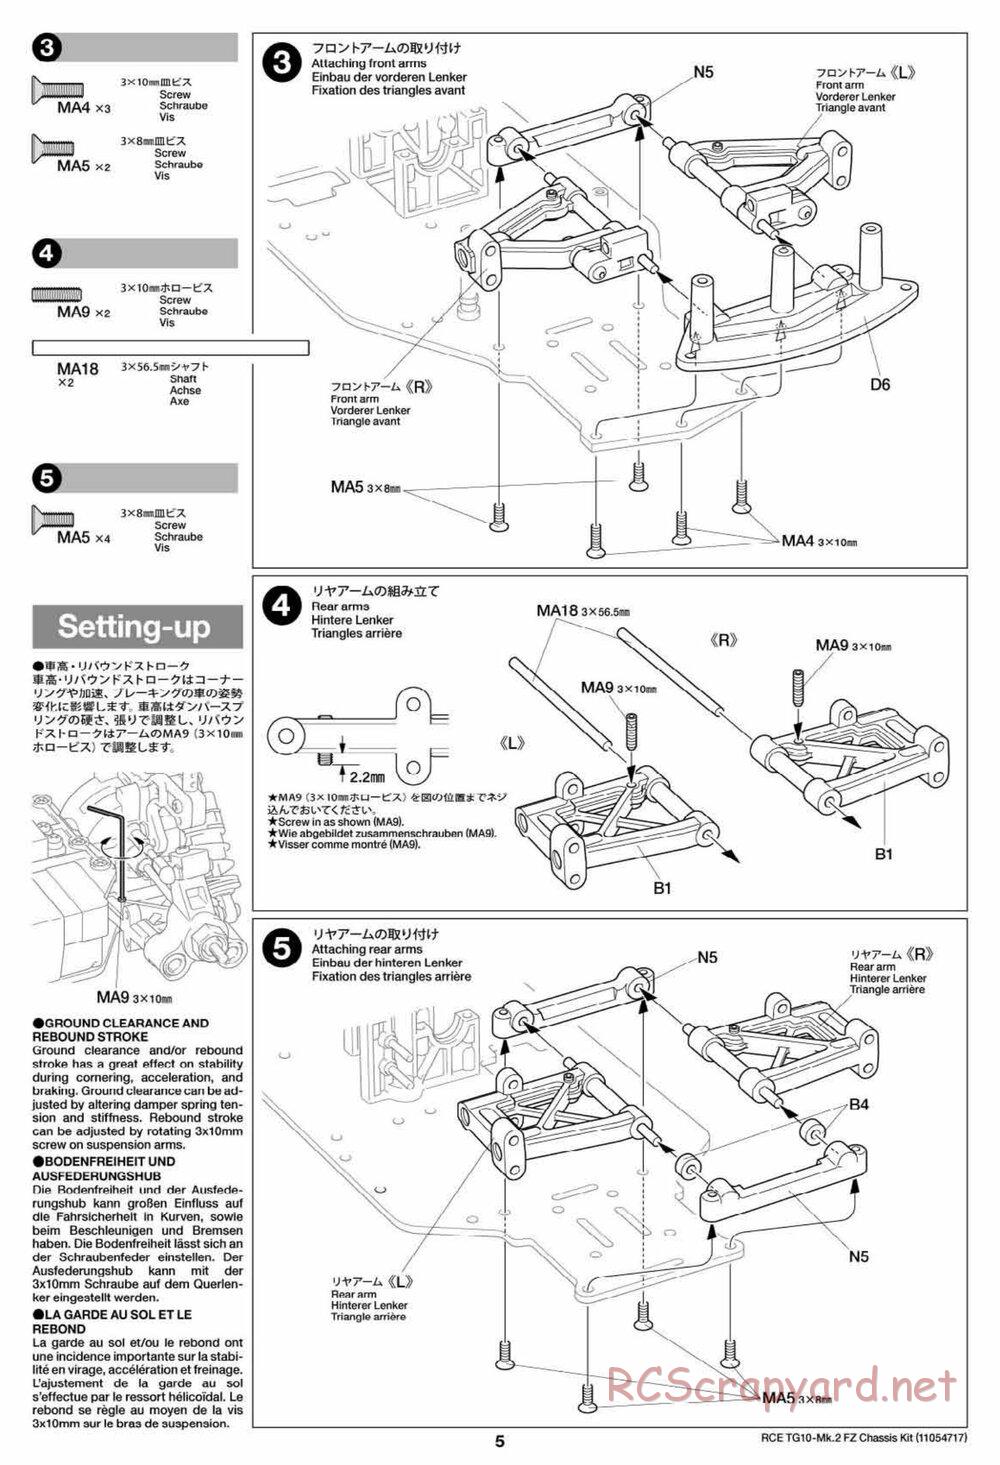 Tamiya - TG10 Mk.2 FZ Chassis - Manual - Page 5